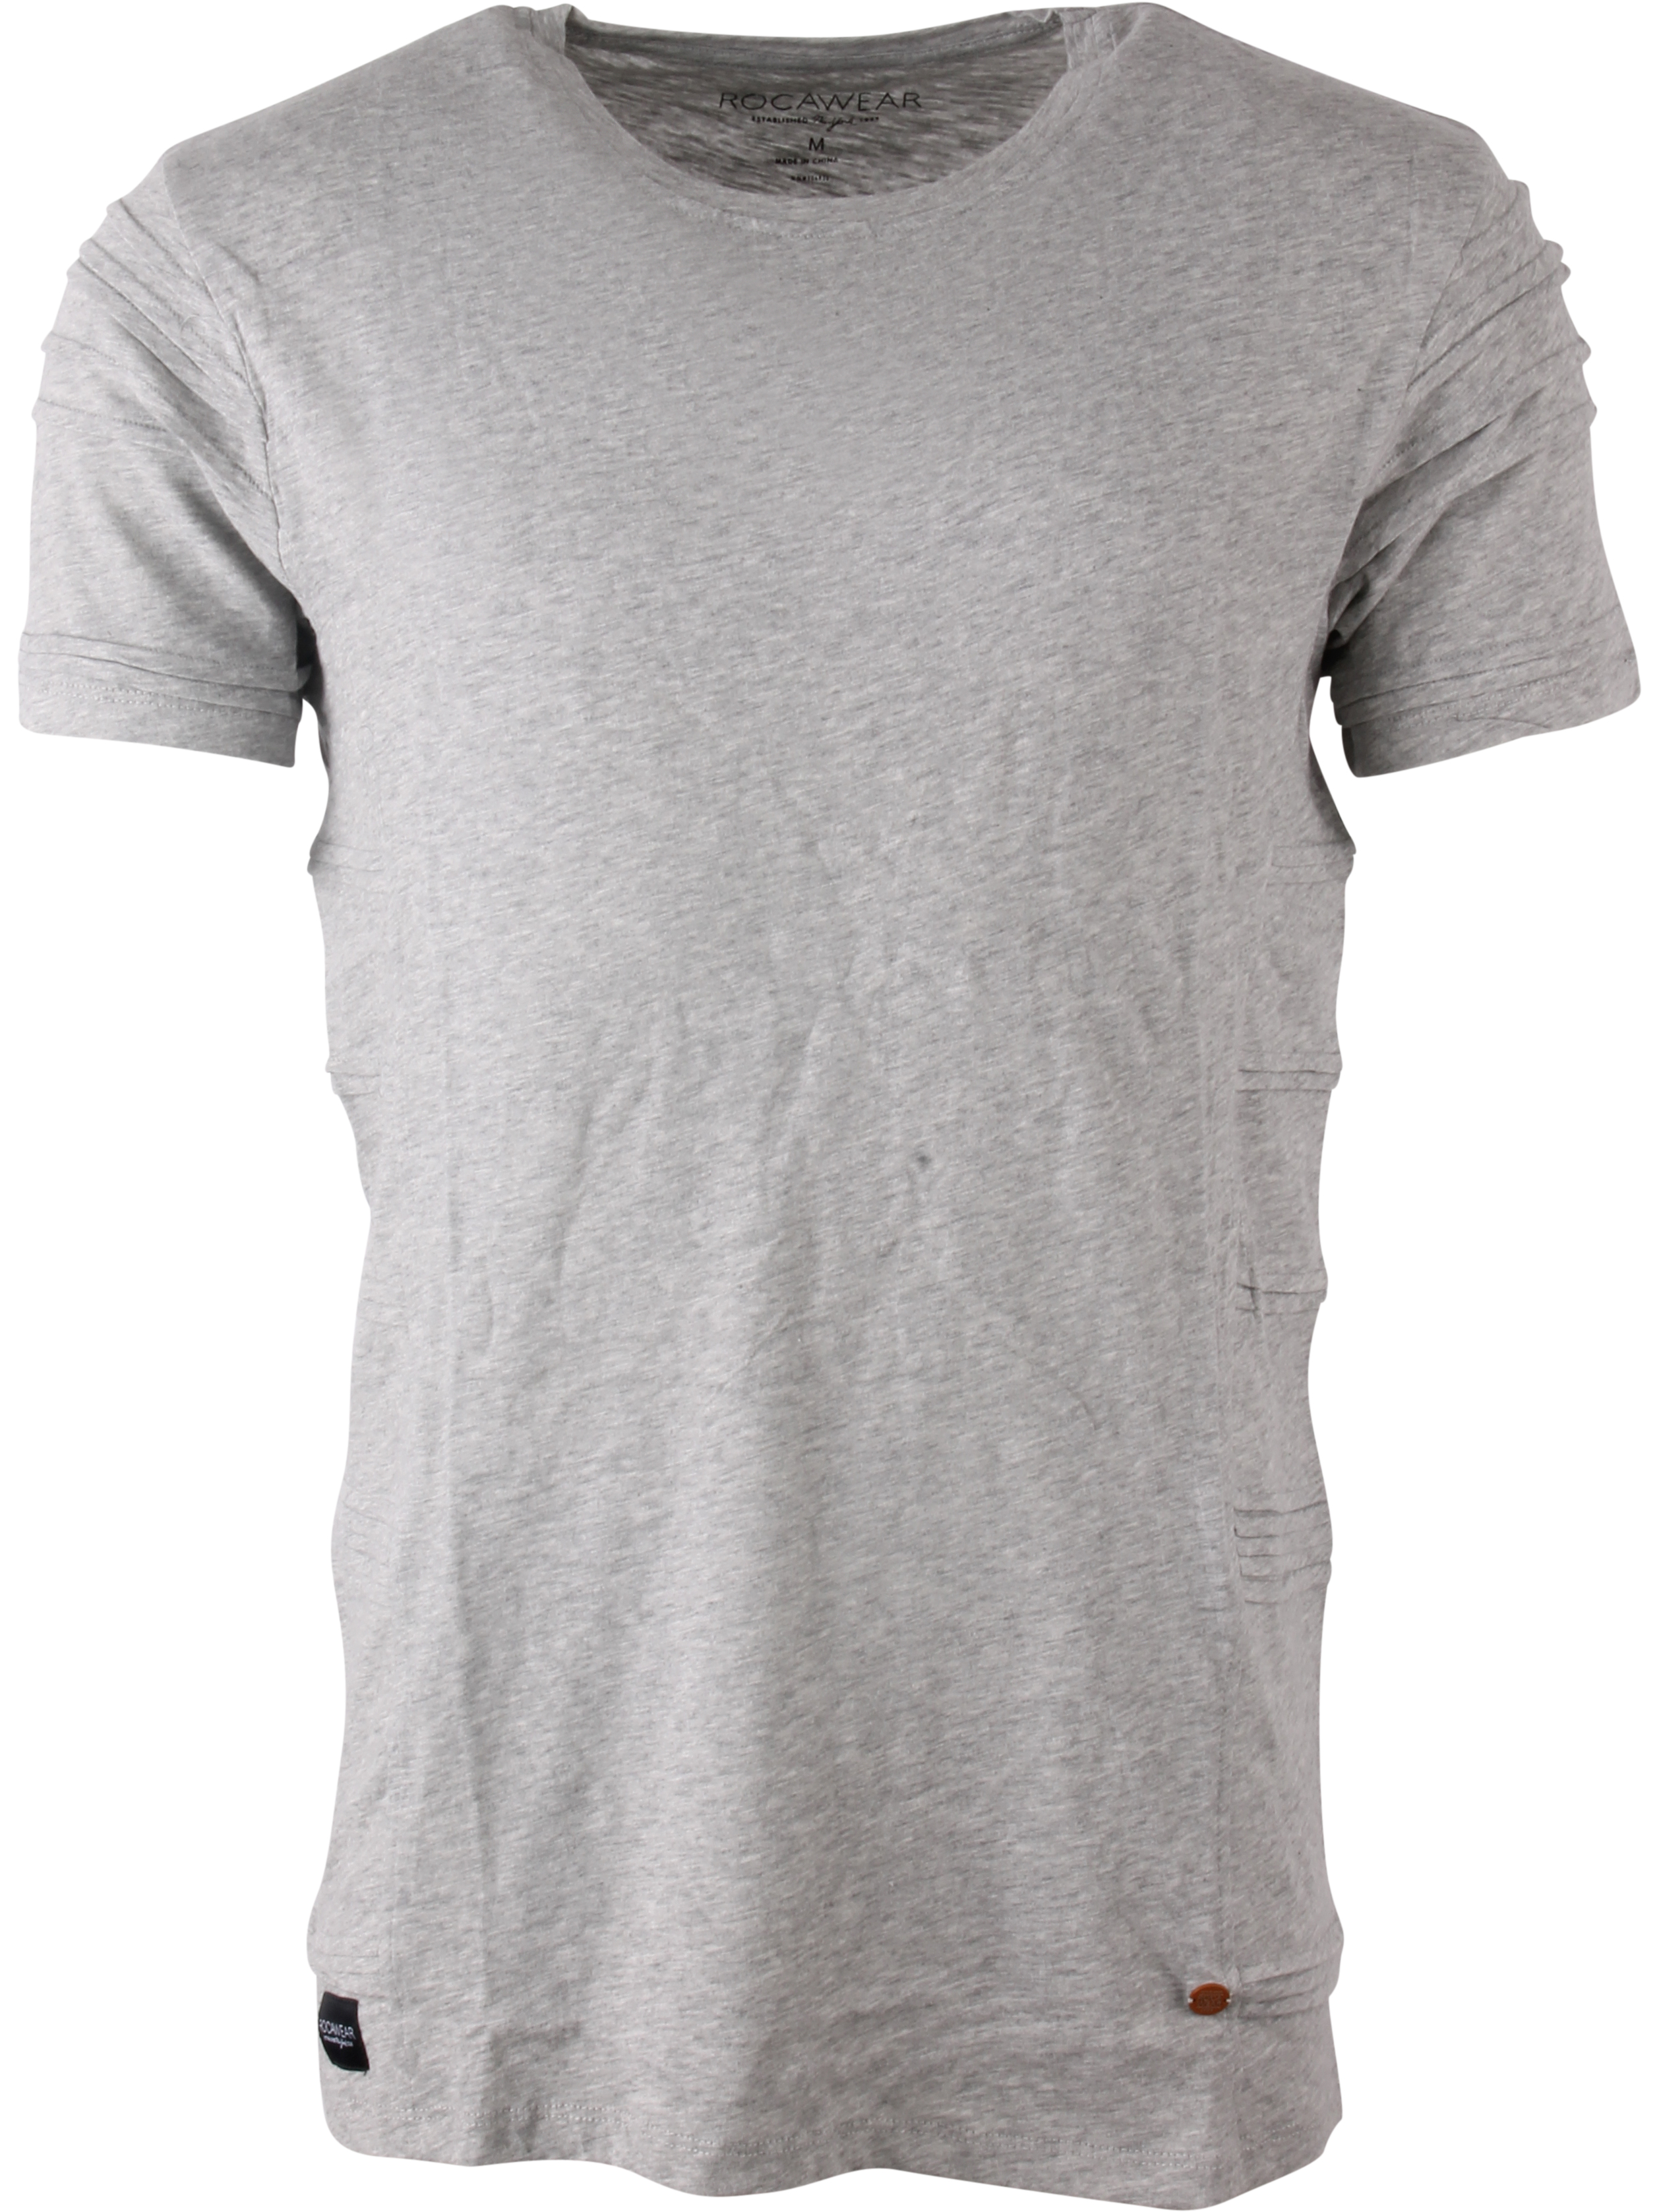 Buy Rocawear 'T400' T-shirt - Heather Grey